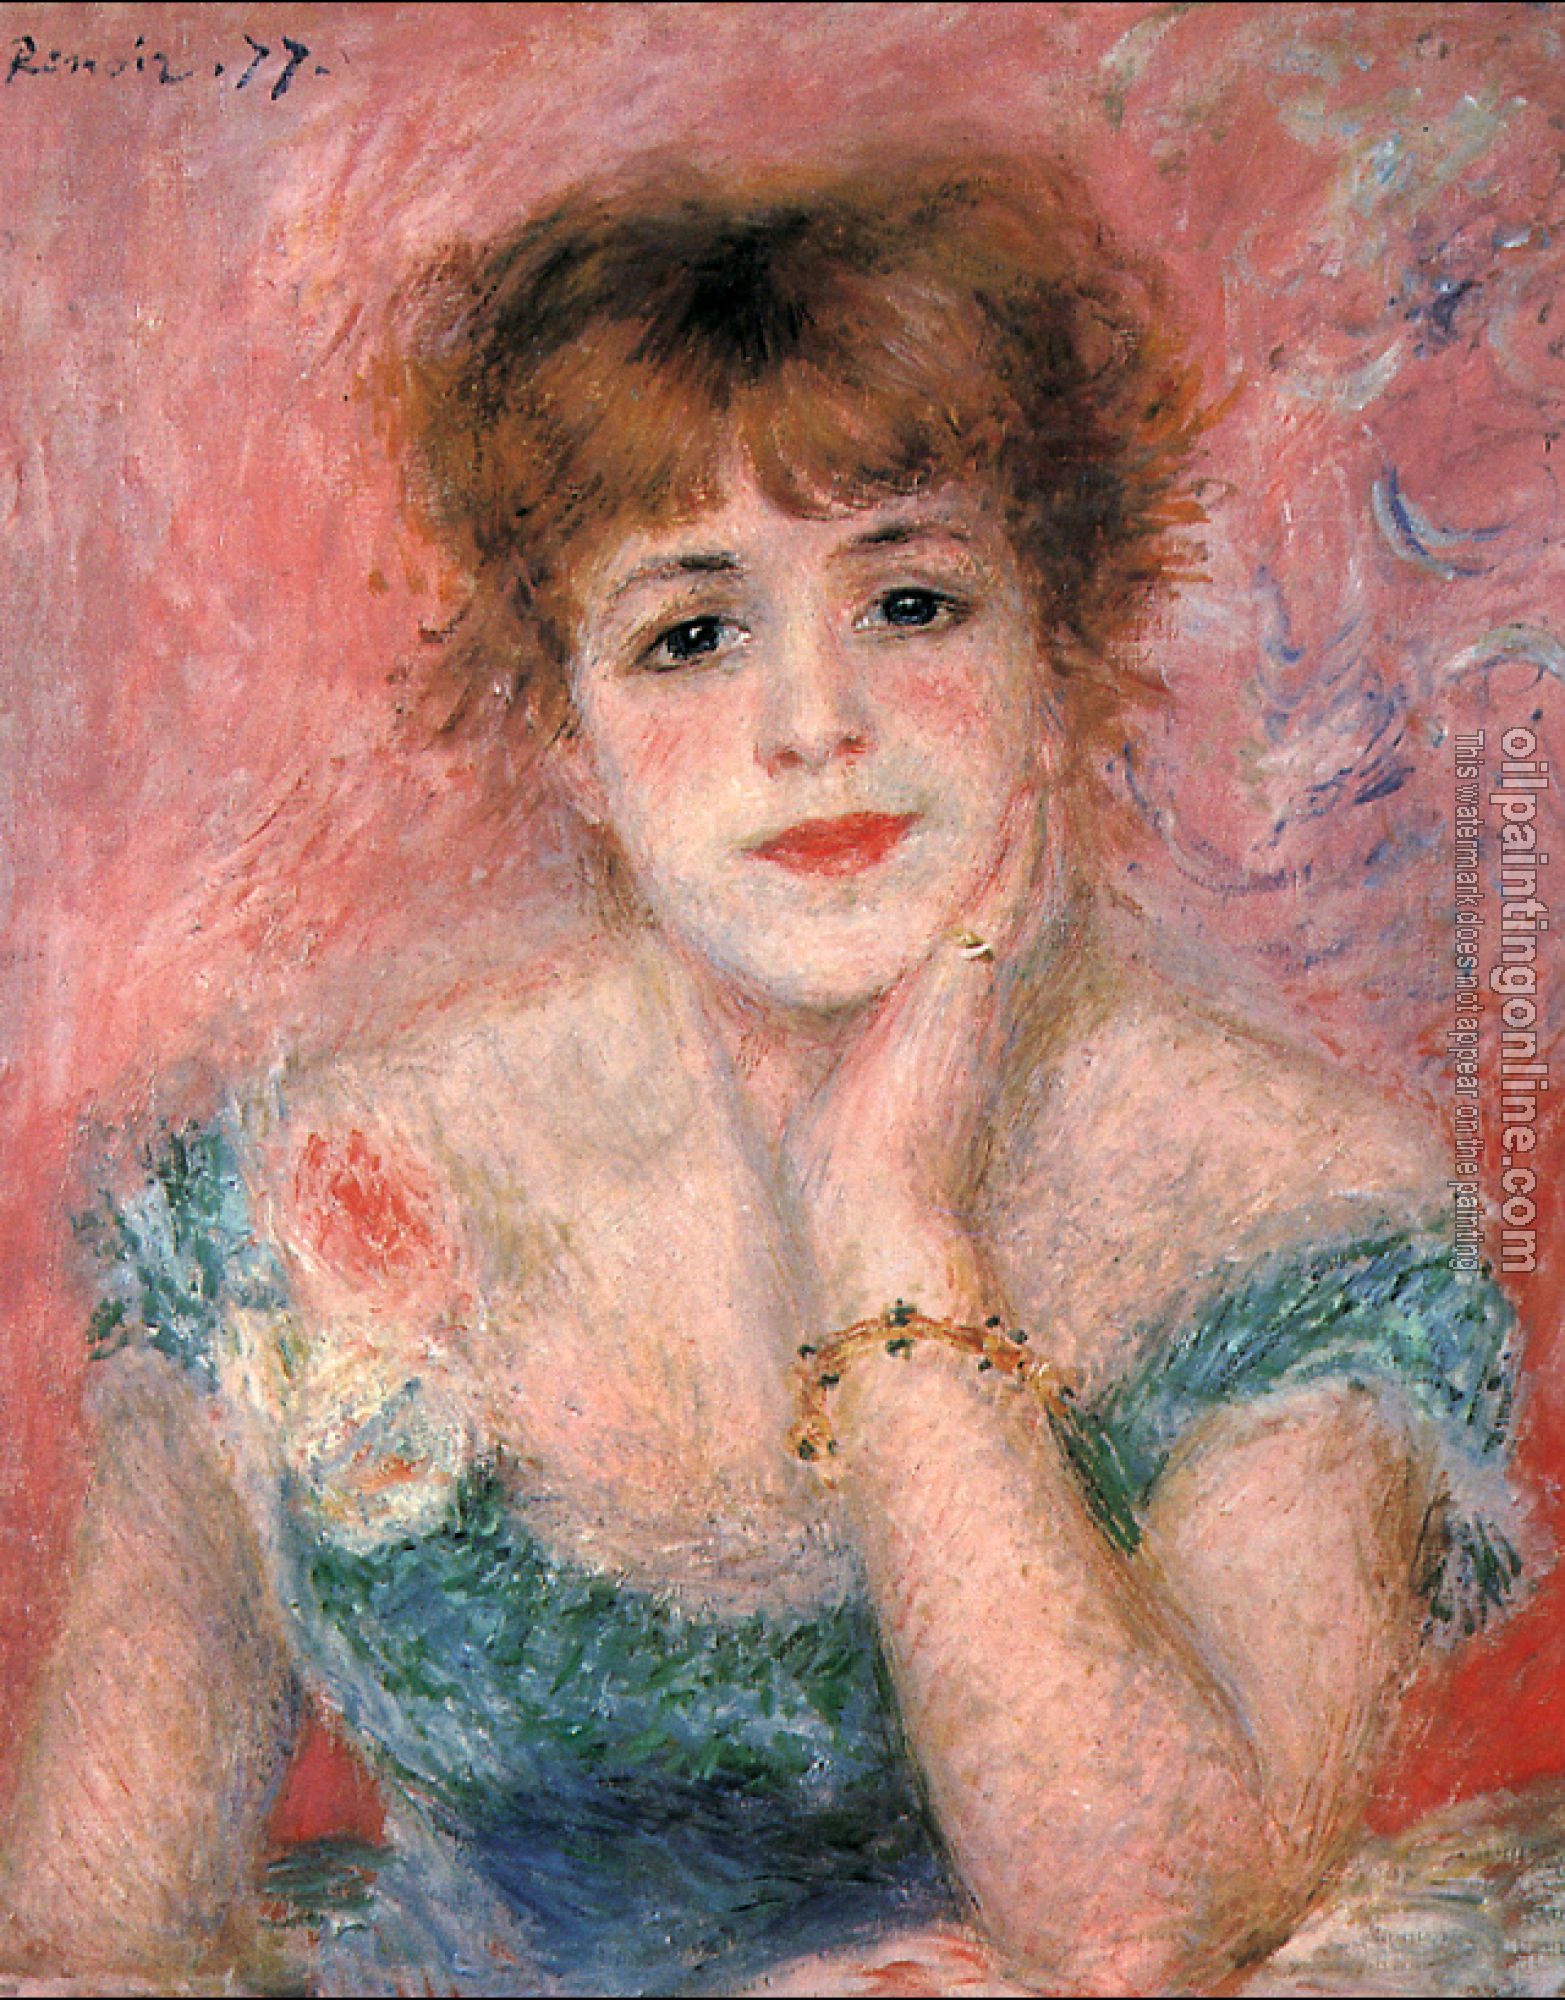 Renoir, Pierre Auguste - Jeanne Samary in a Low-Necked Dress